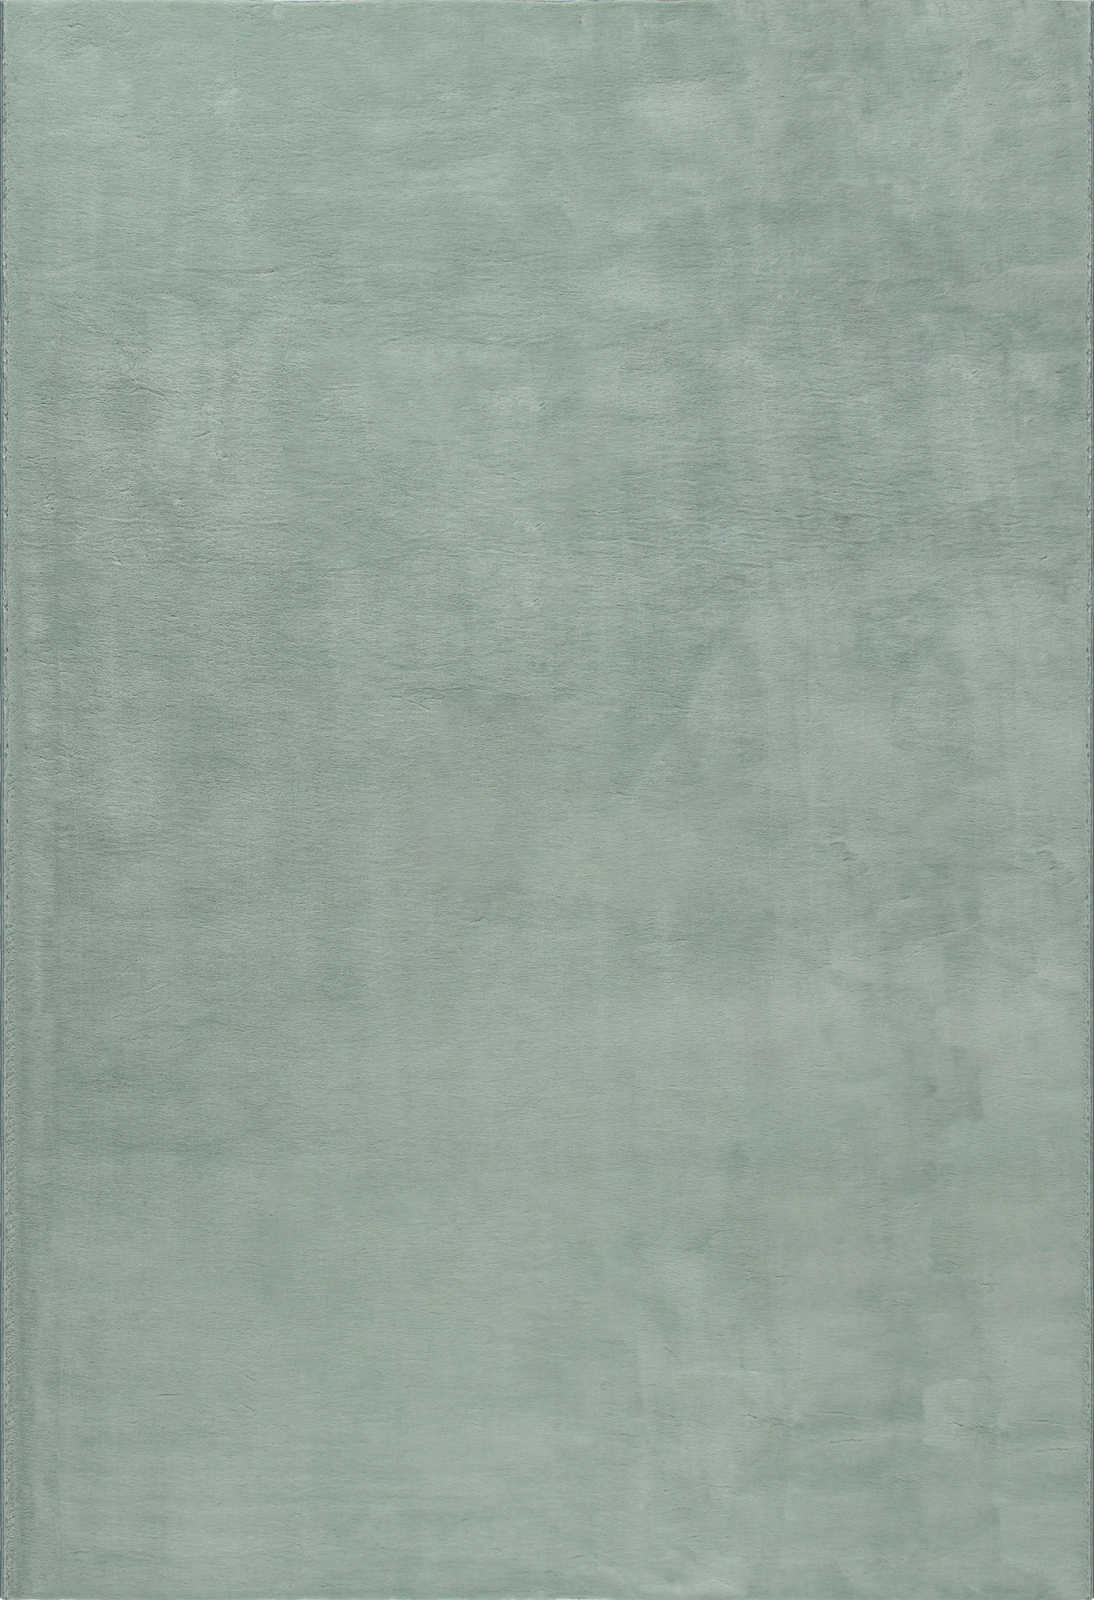             Weicher Hochflor Teppich in sanften Grün – 110 x 60 cm
        